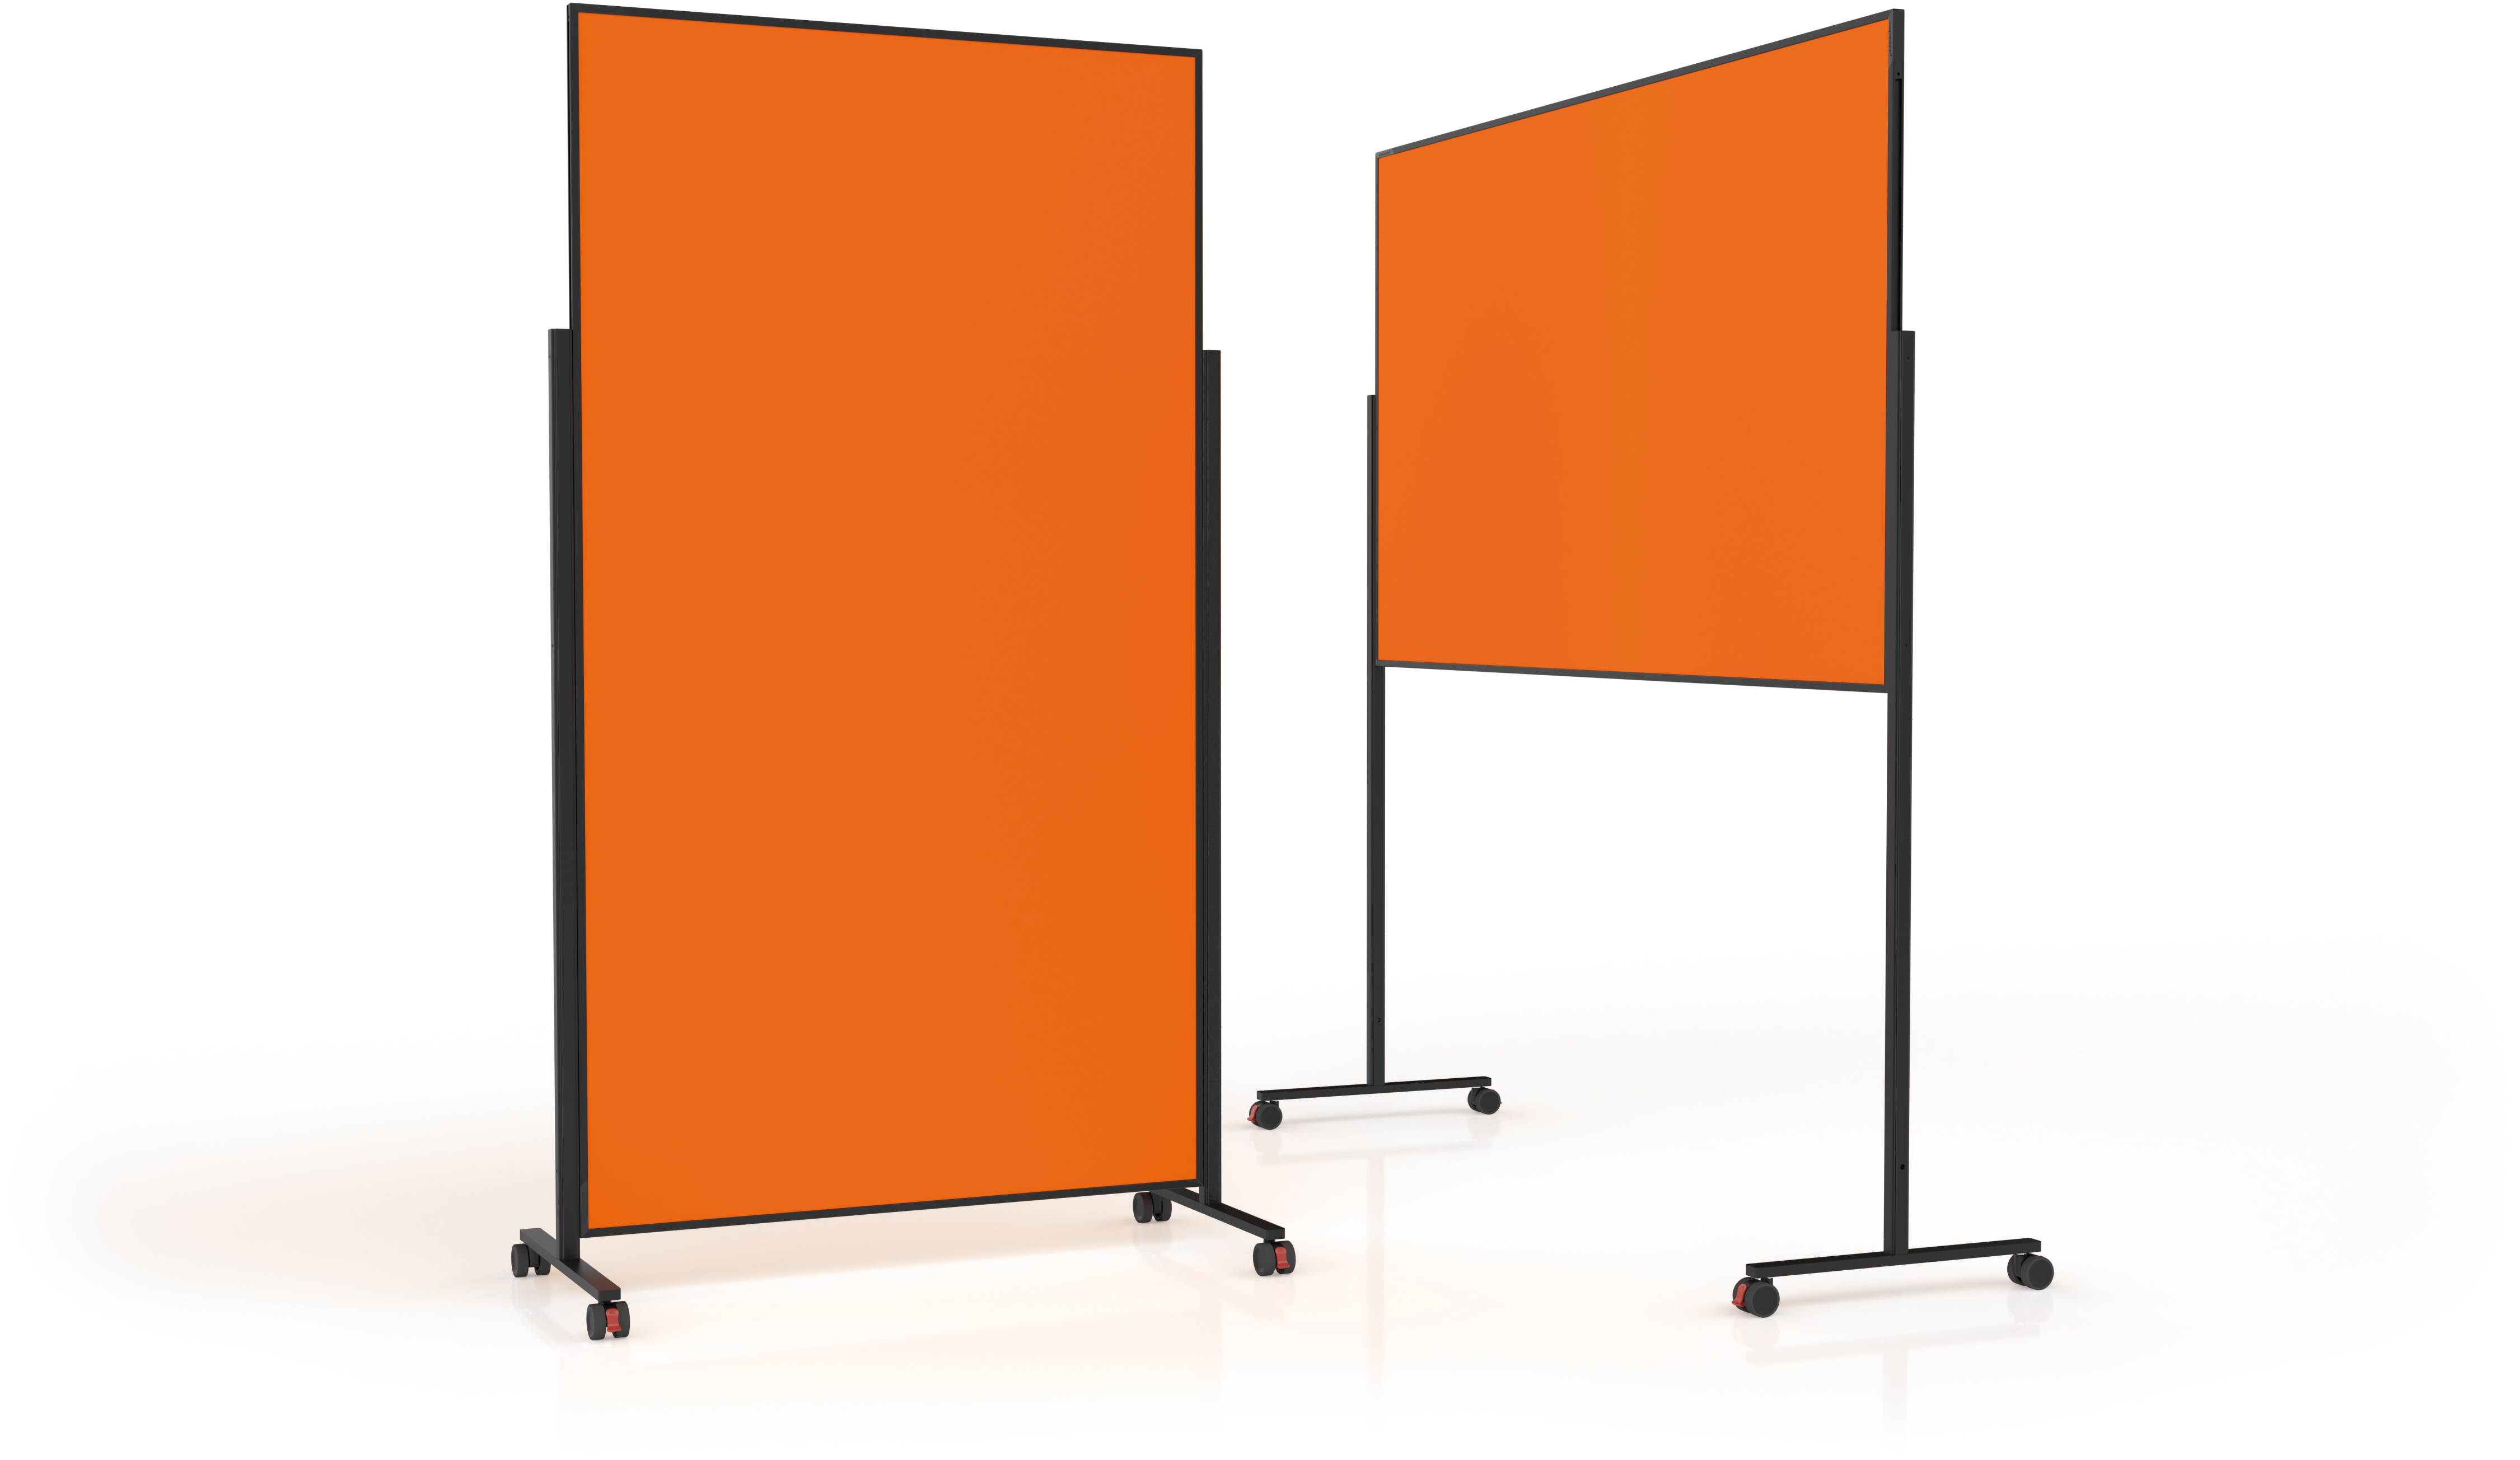 MAGNETOPLAN Design Tableau de Présent. VP 1181244 orange, feutre 1000x1800mm